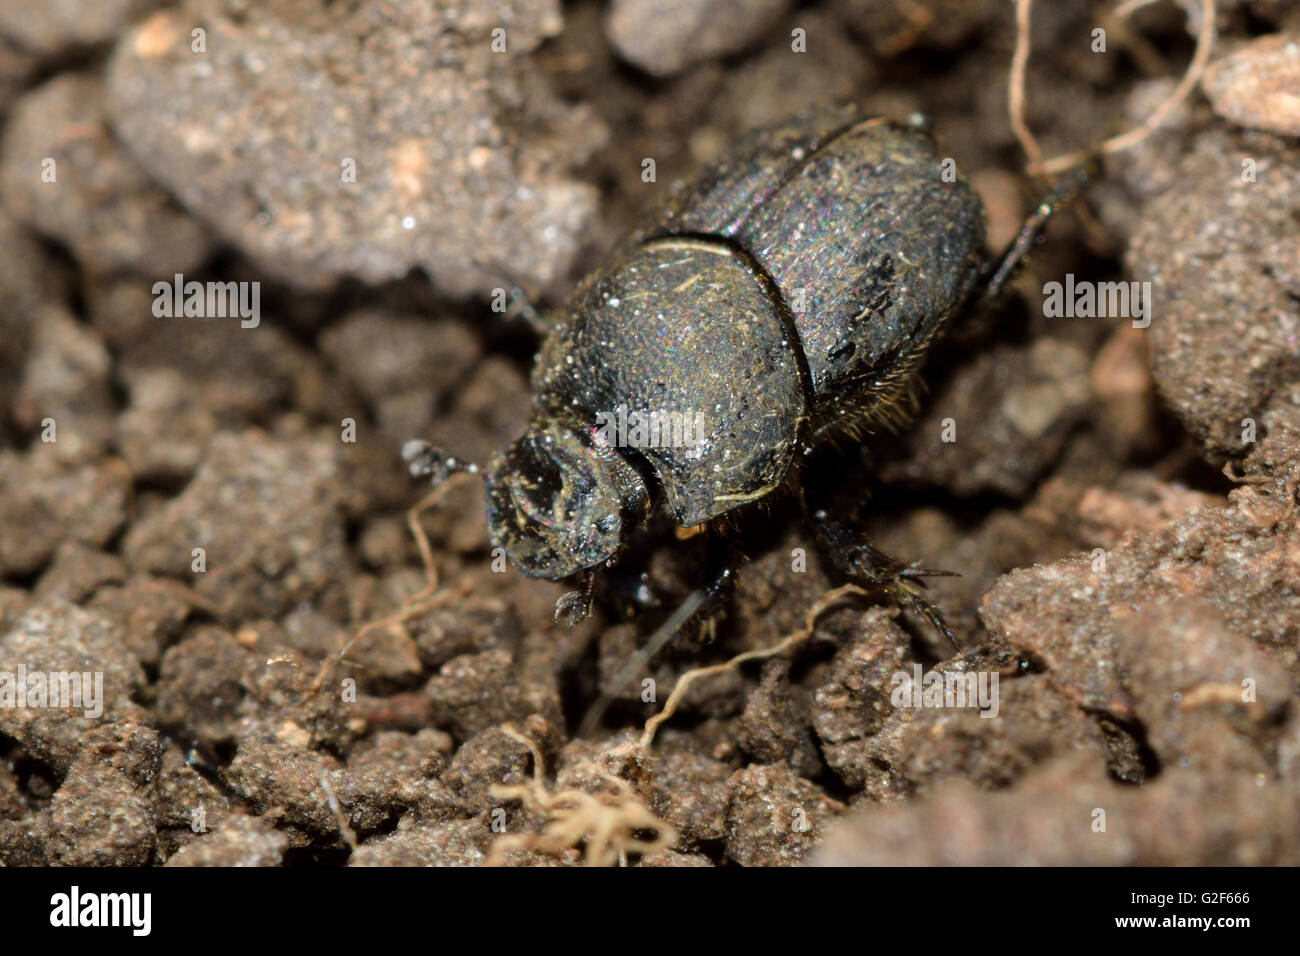 Onthophagus joannae dung beetle. Sterco di piccolo coleottero della famiglia Scarabaeidae, alimentazione a cavallo poo Foto Stock